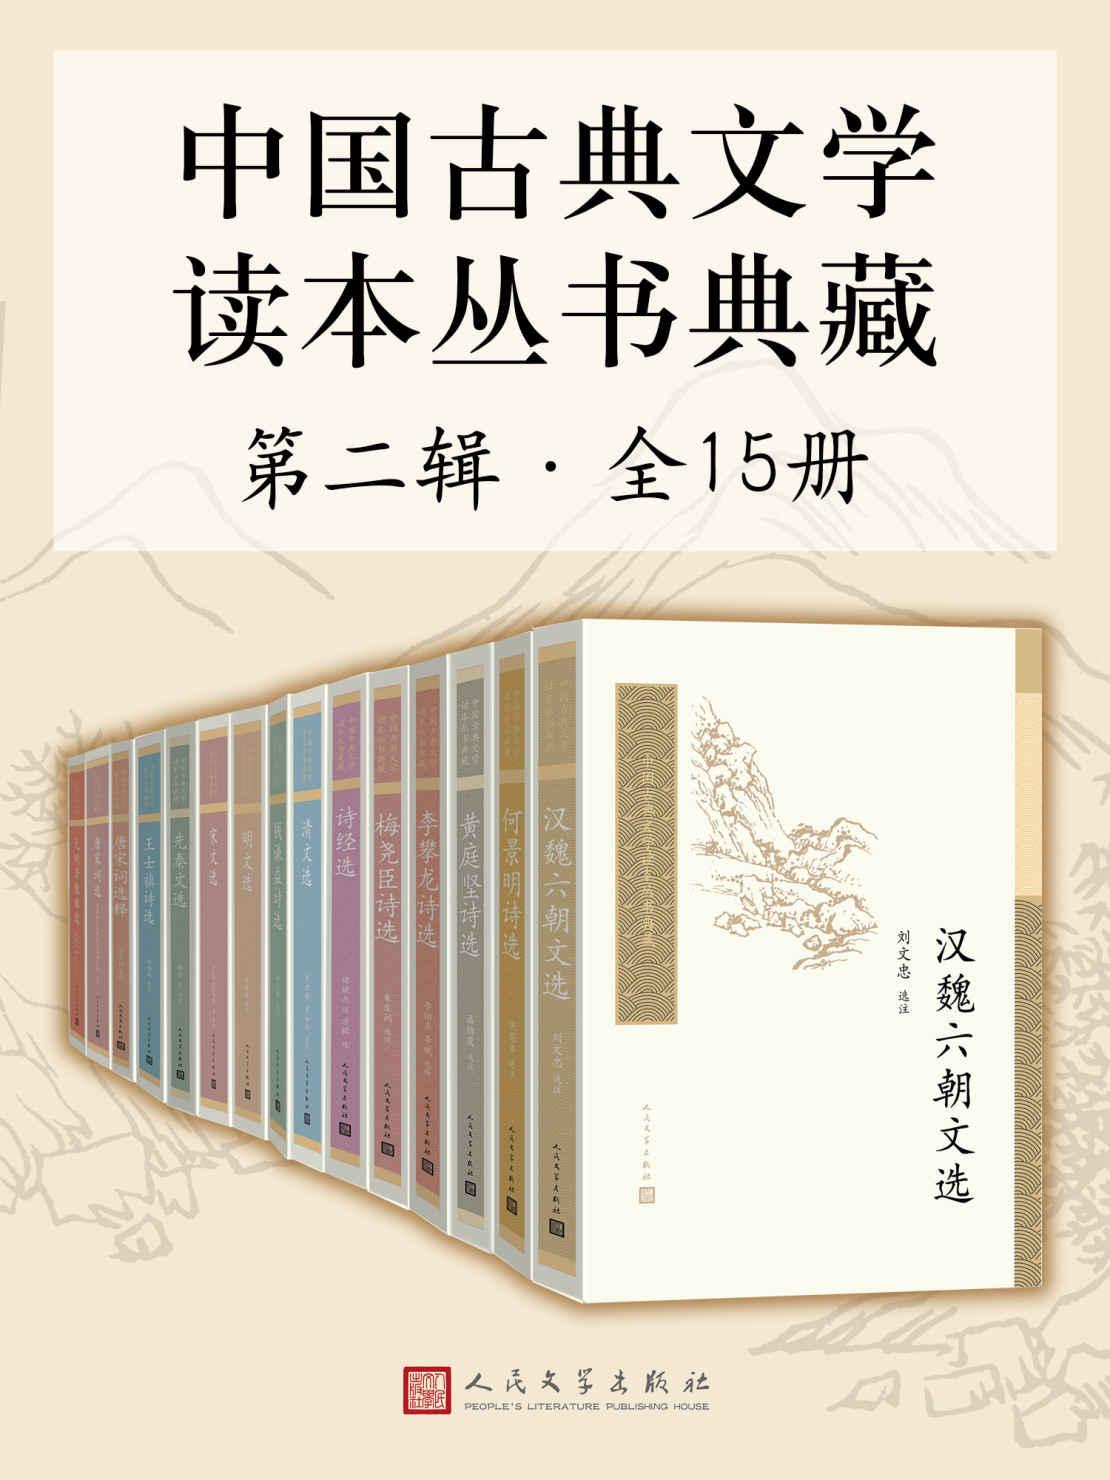 中国古典文学读本丛书典藏·第二辑 全15册pdf-epub-mobi-txt-azw3